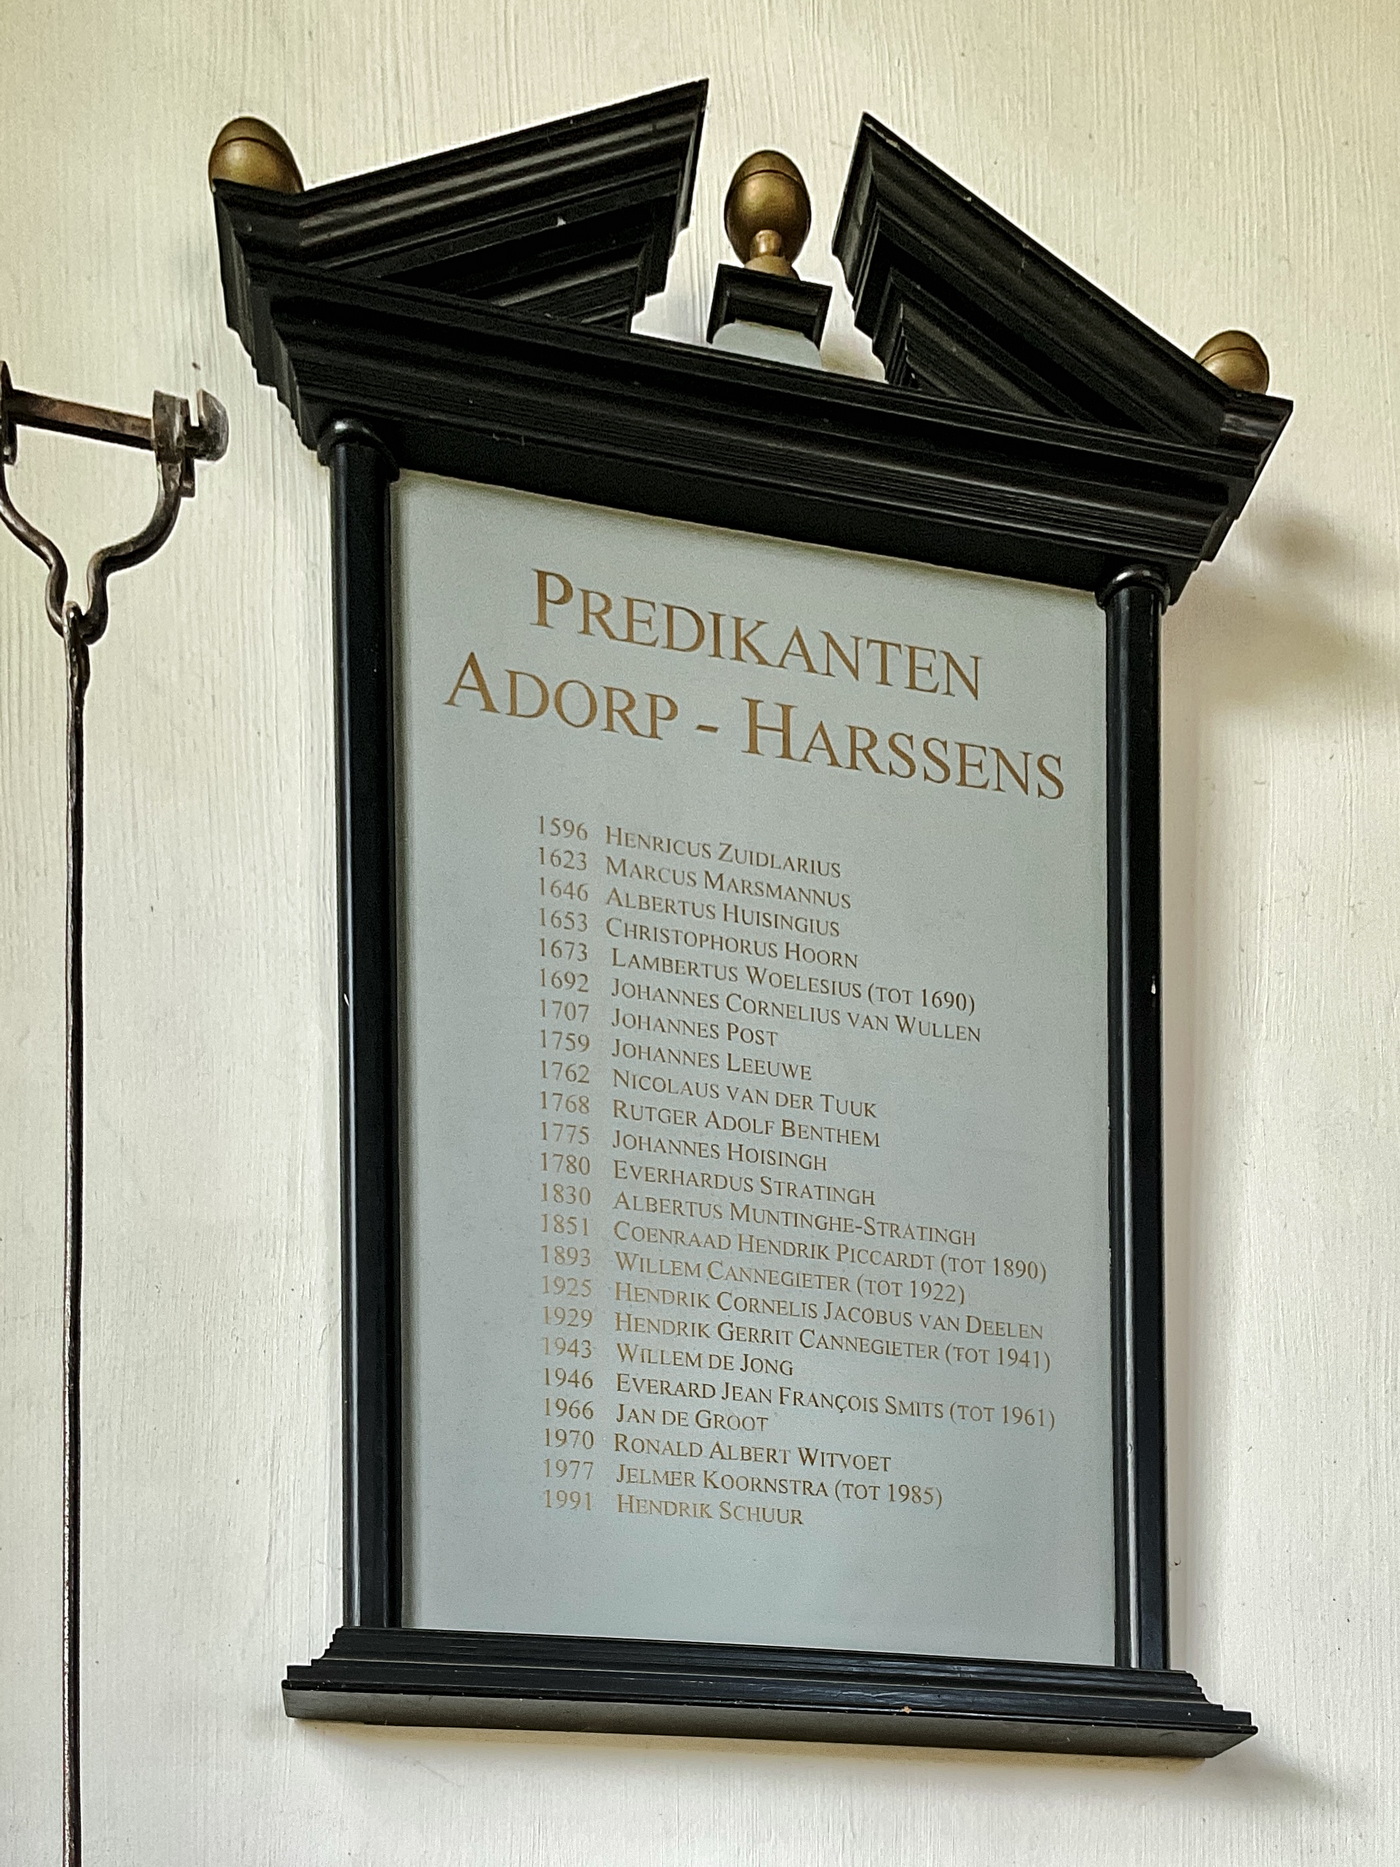 Het bord met daarop de namen van de predikanten door de jaren heen. Foto: (c)Jur Kuipers.